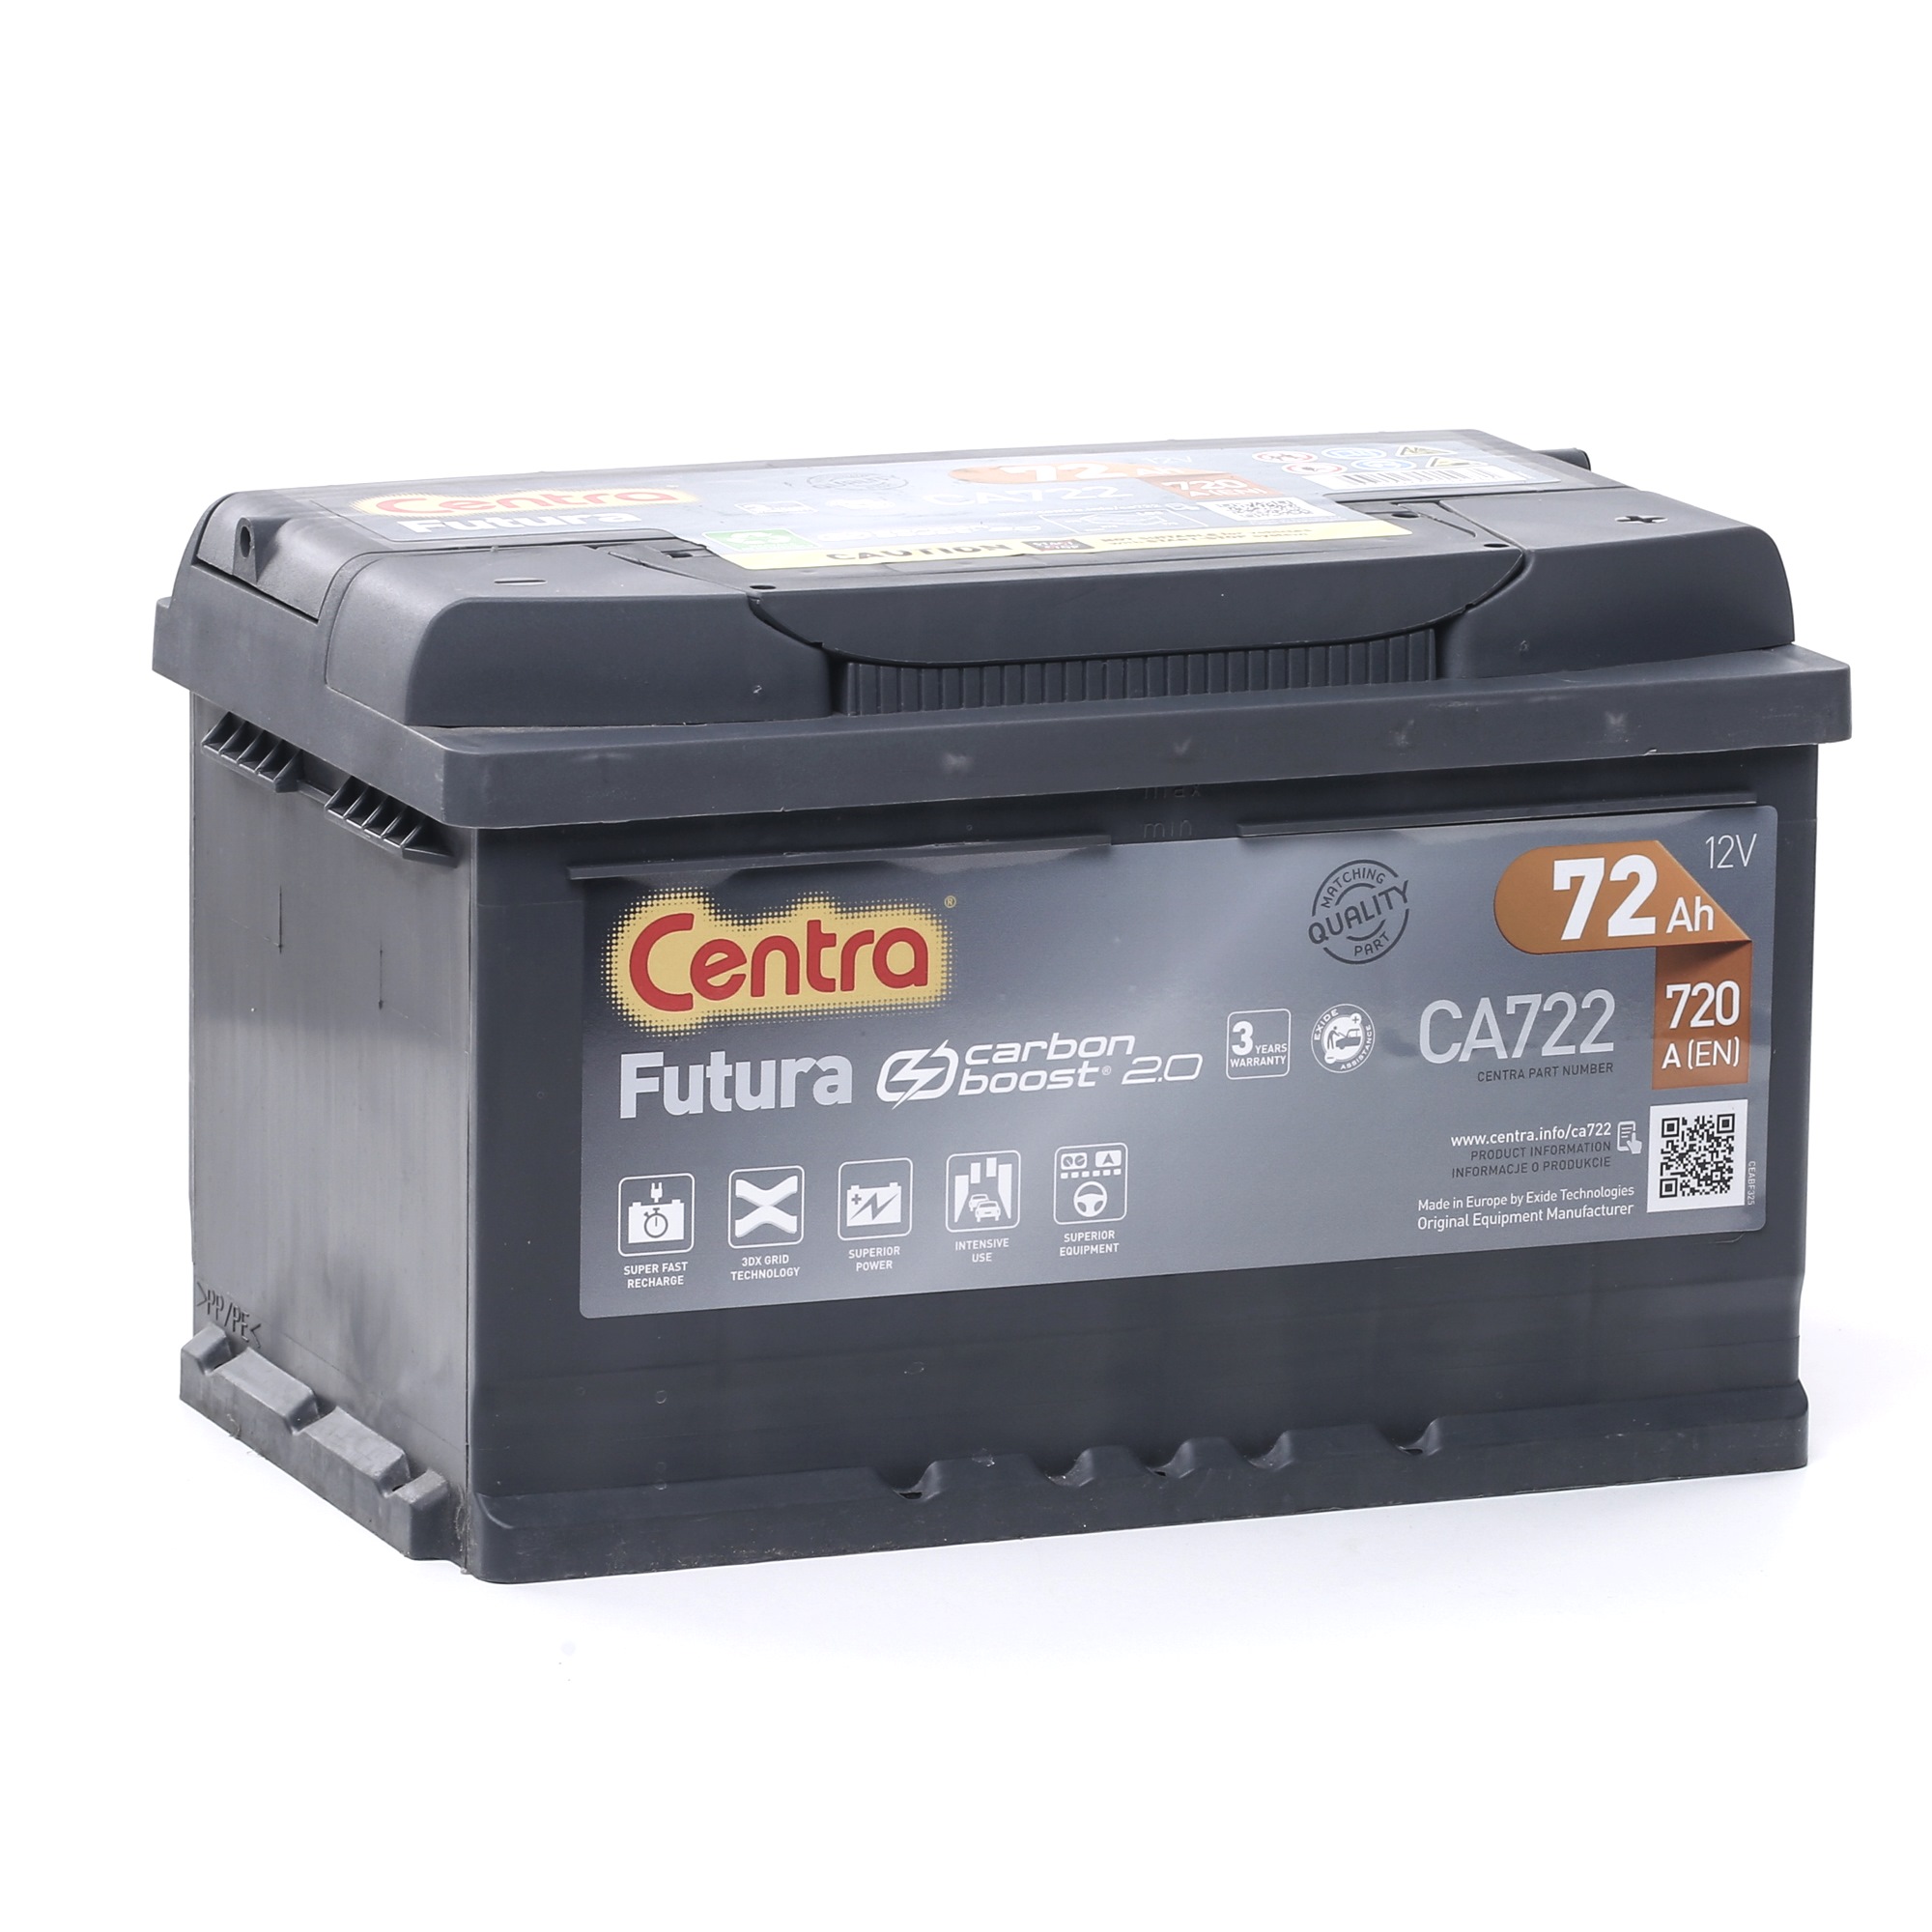 CENTRA Futura CA722 Batterie 12V 72Ah 720A B13 Bleiakkumulator